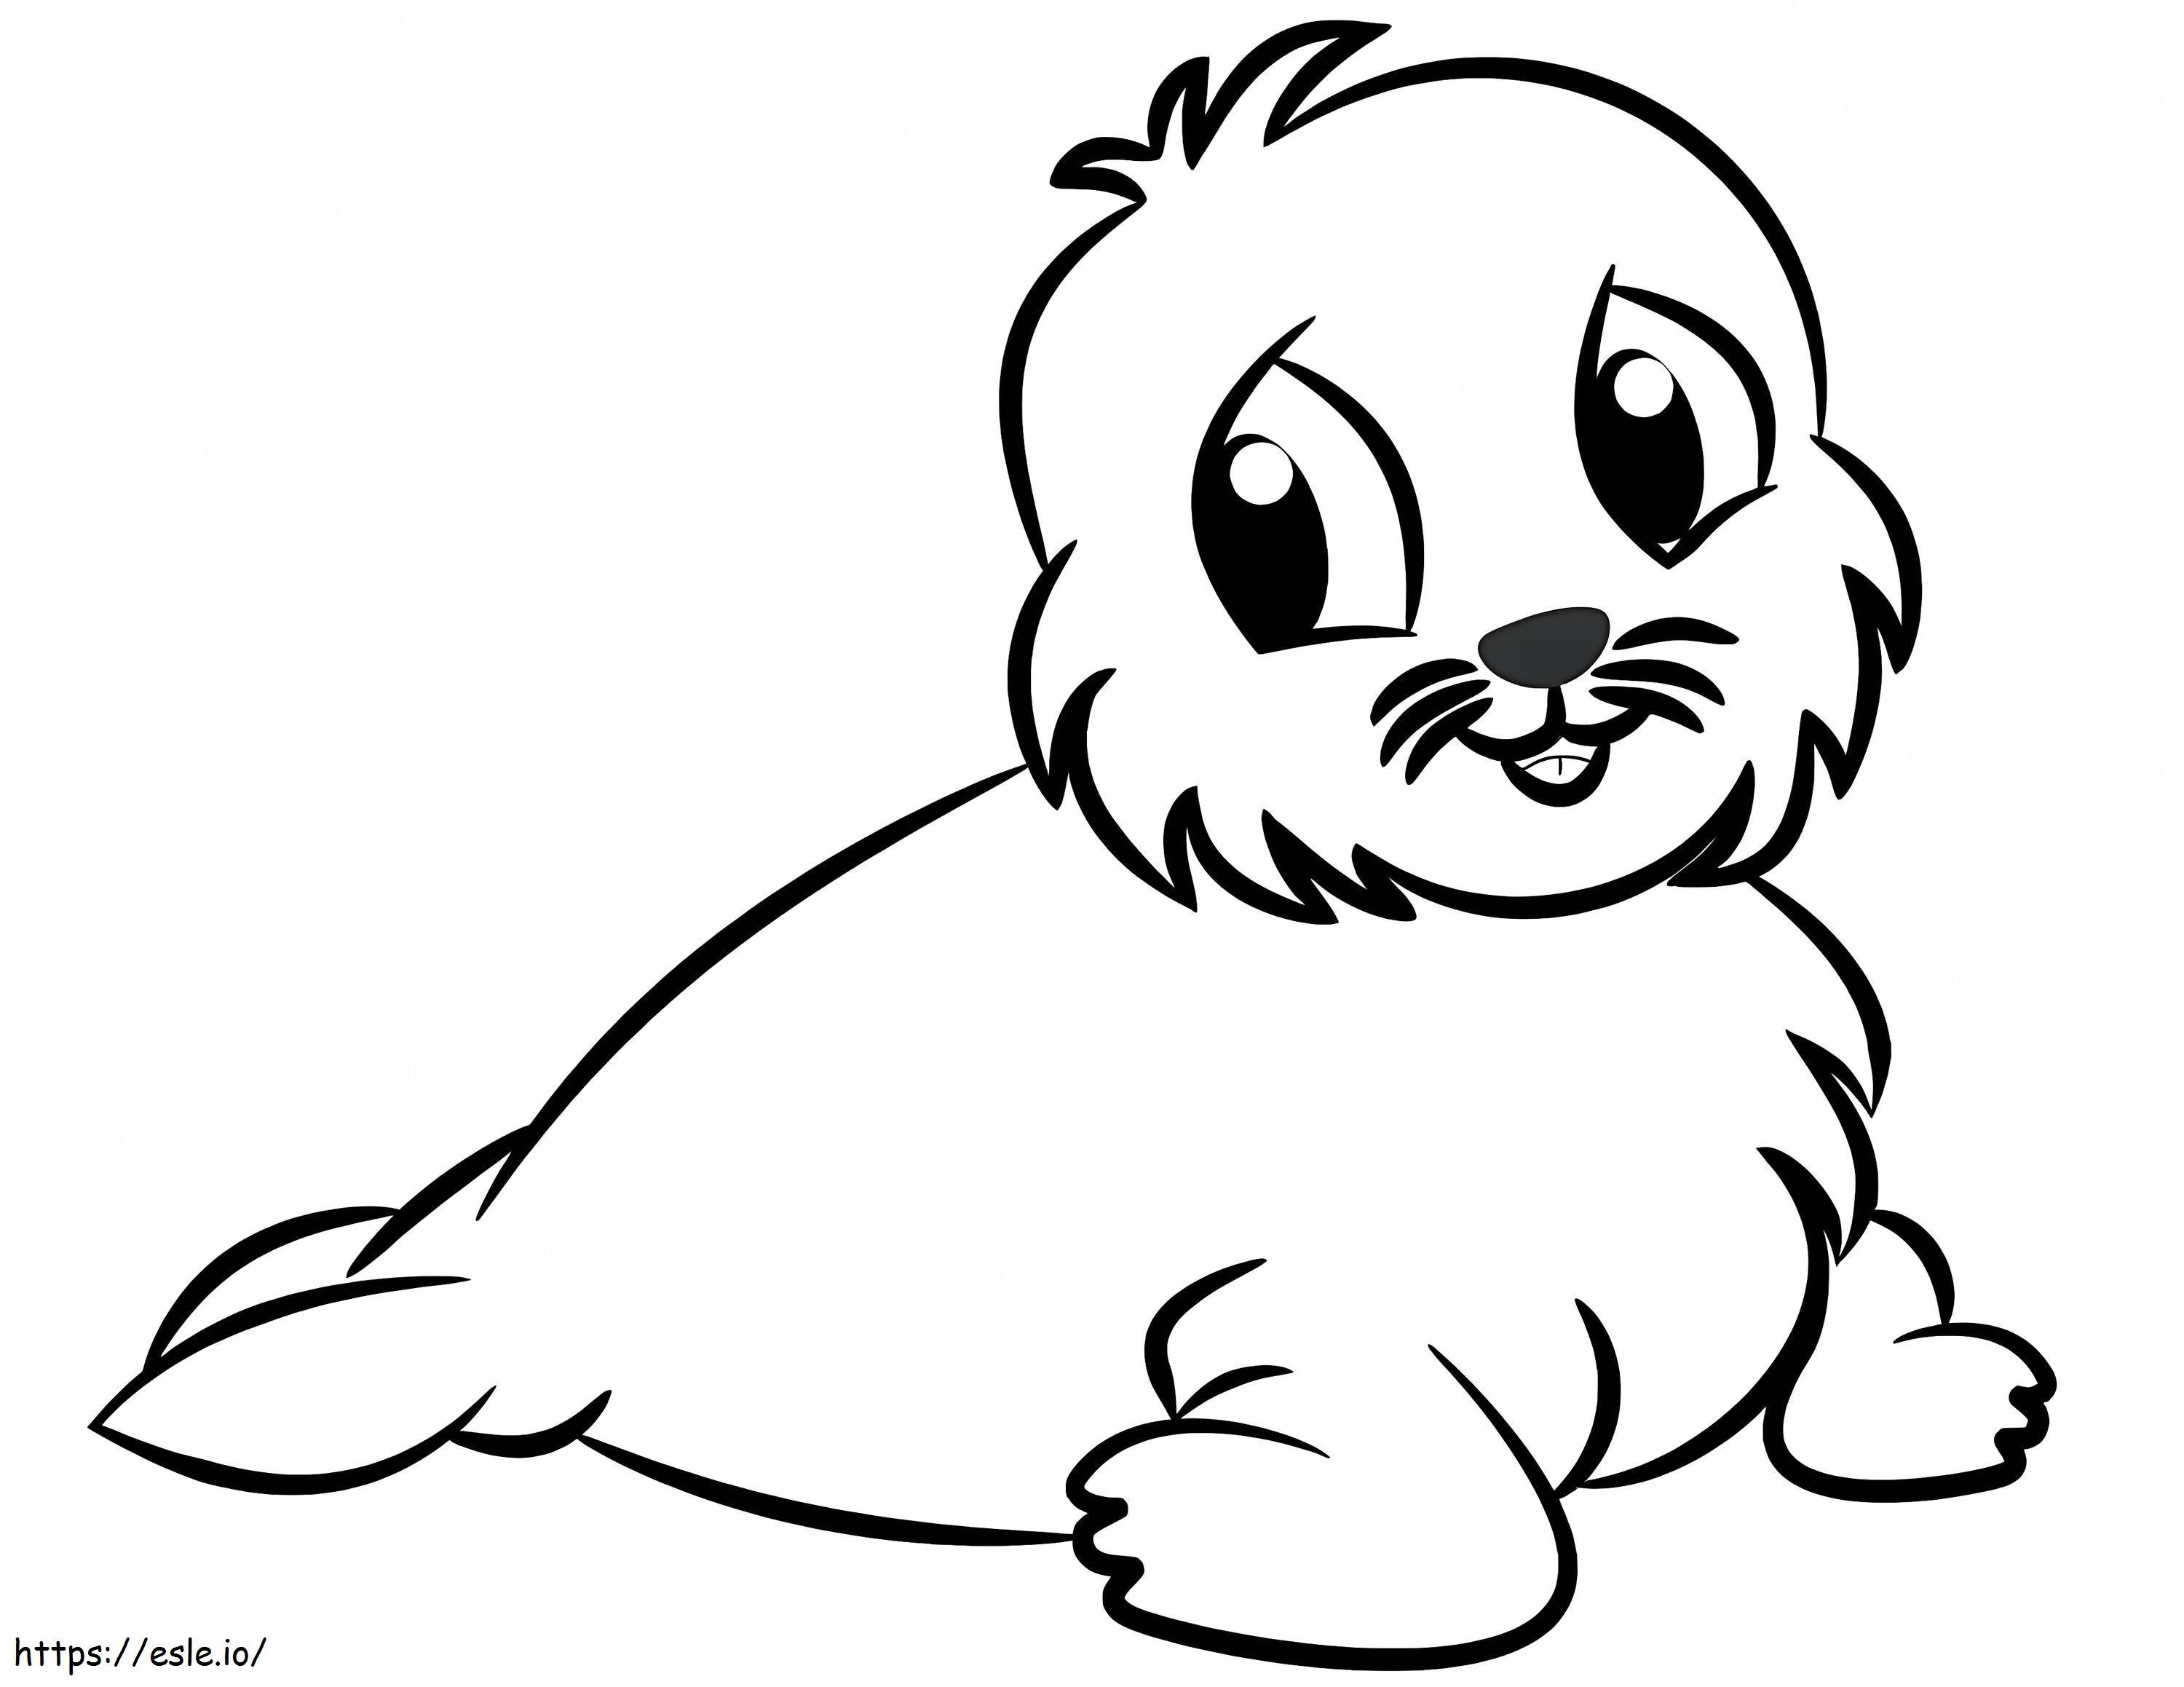 Little Sea Lion coloring page